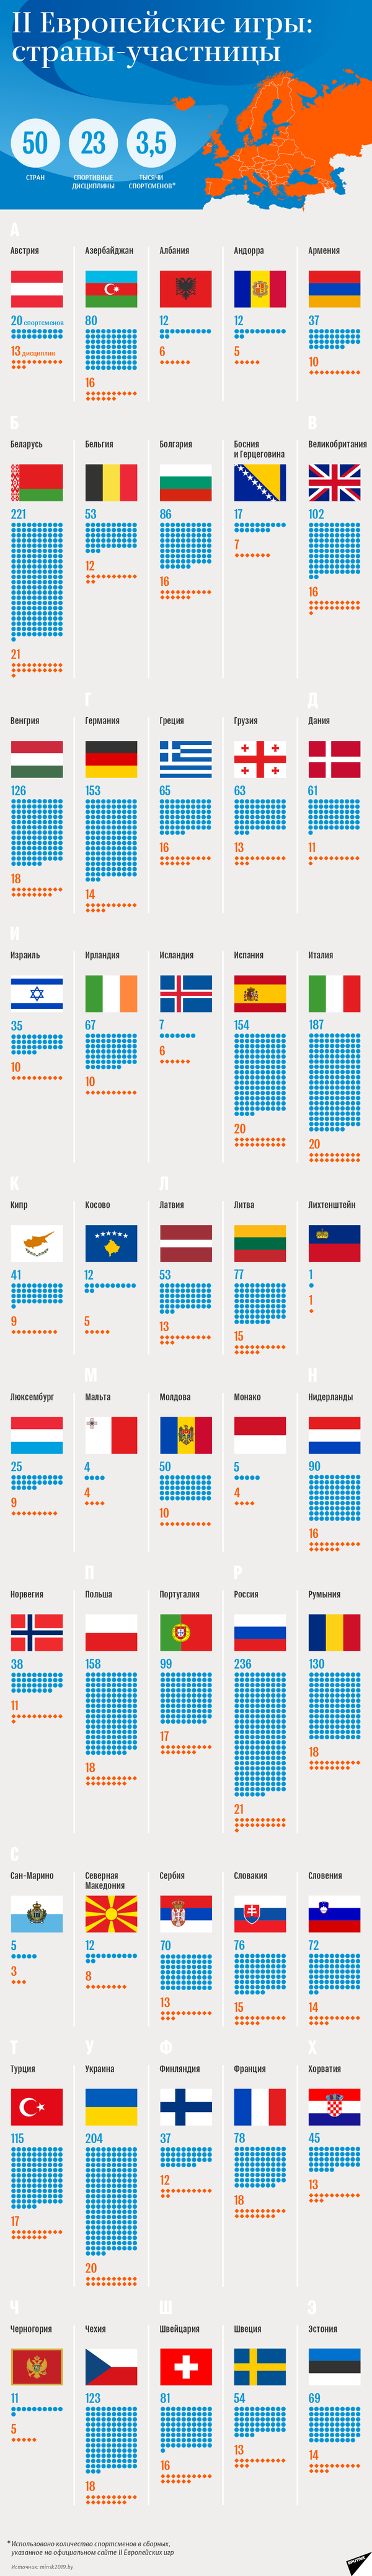 Cтраны-участницы II Европейских игр | Инфографика sputnik.by - Sputnik Беларусь